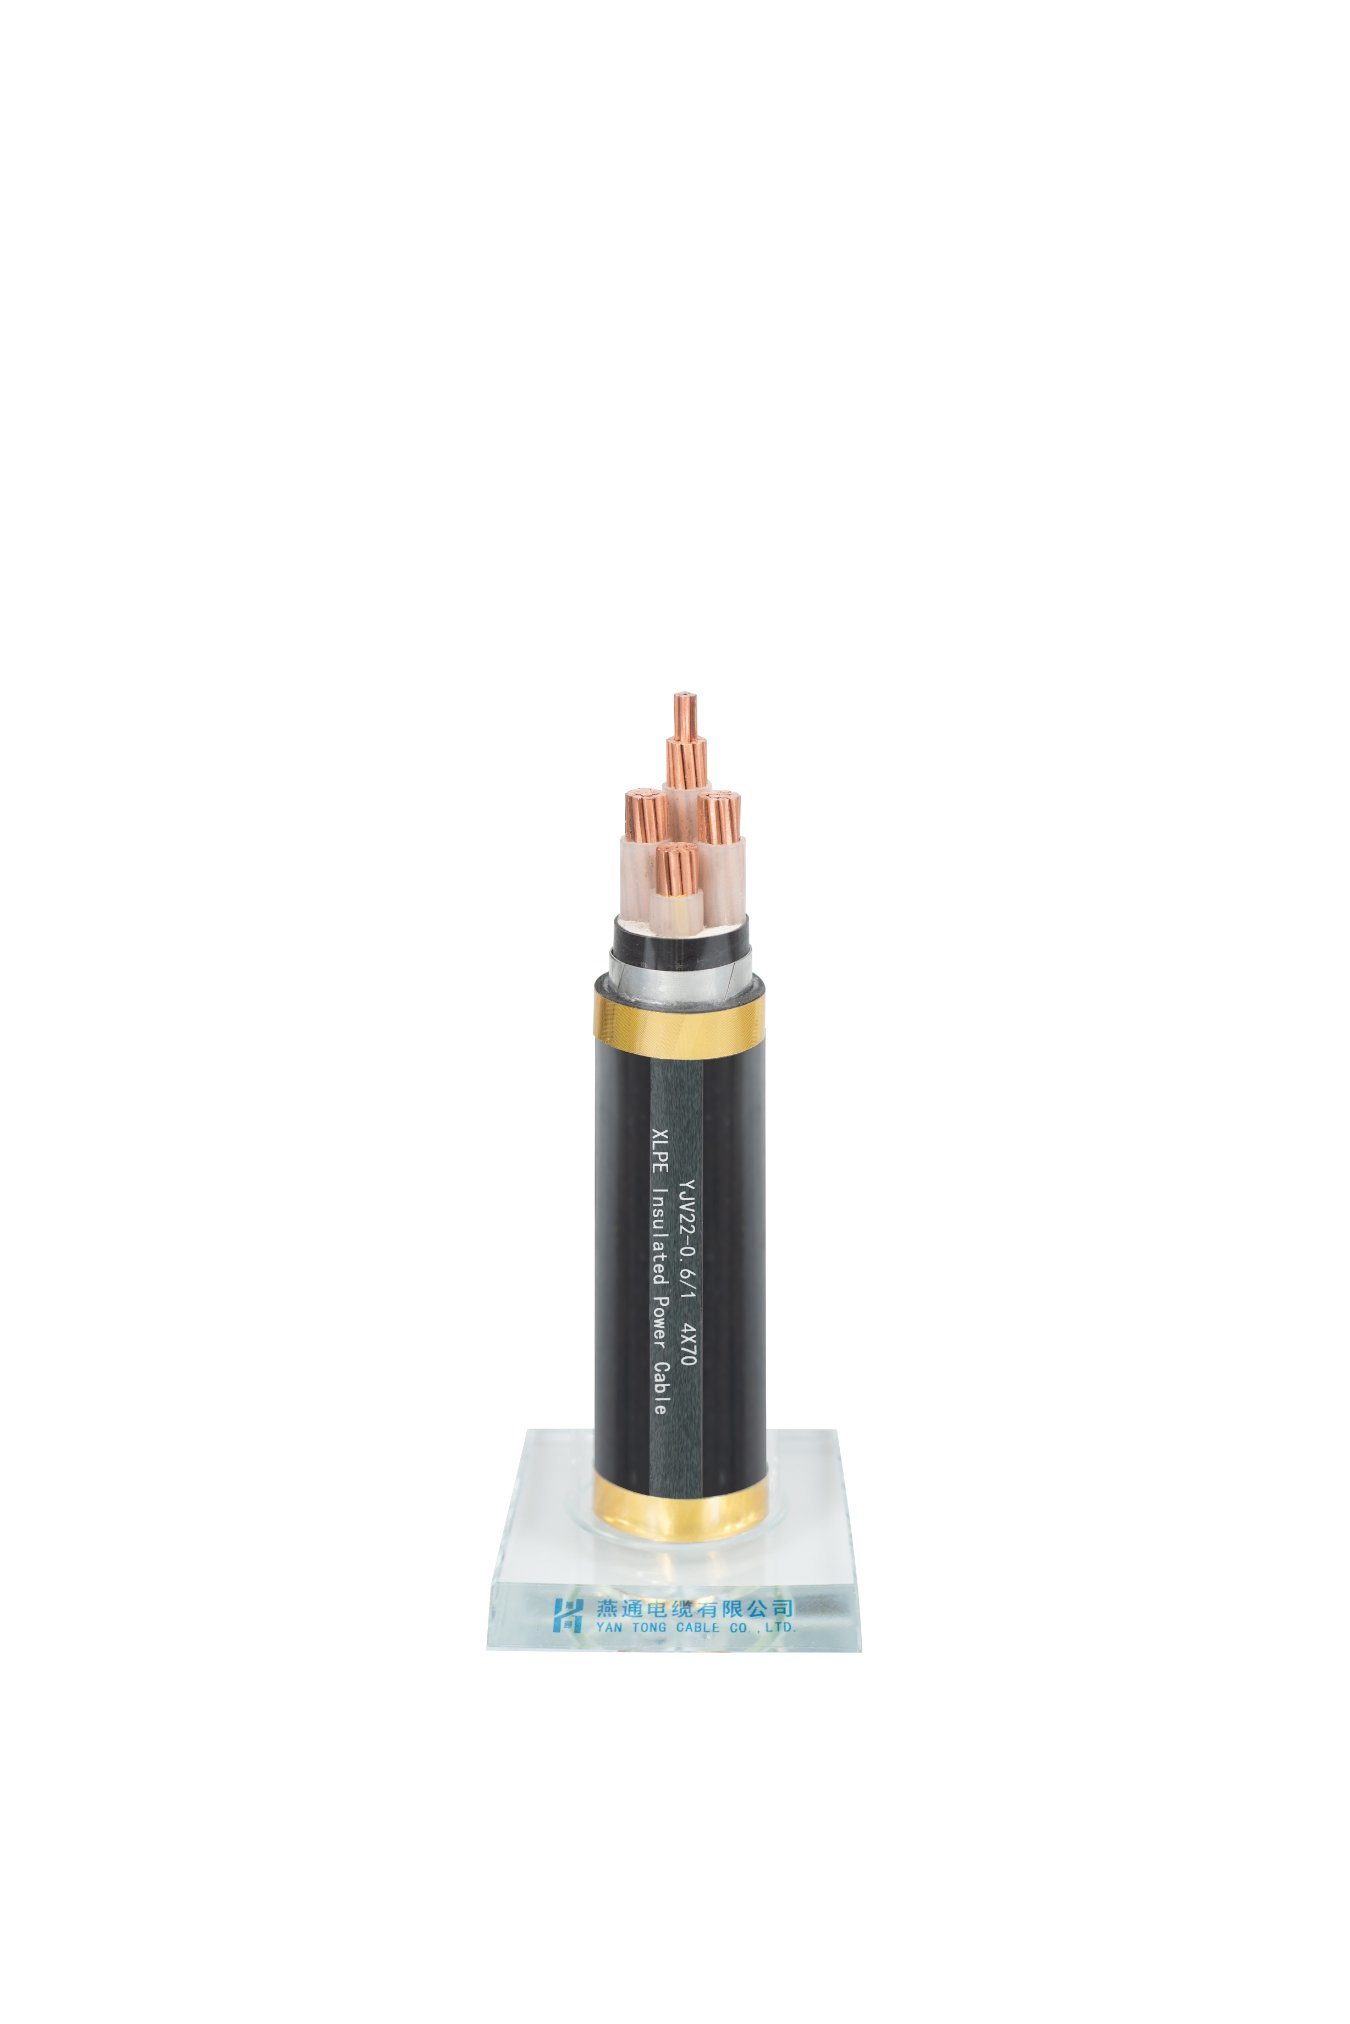 N2xsey XLPE PVC – 6/10 (12) Kv N2xy IEC 60502-1 XLPE PVC 0.6/1kv Cable